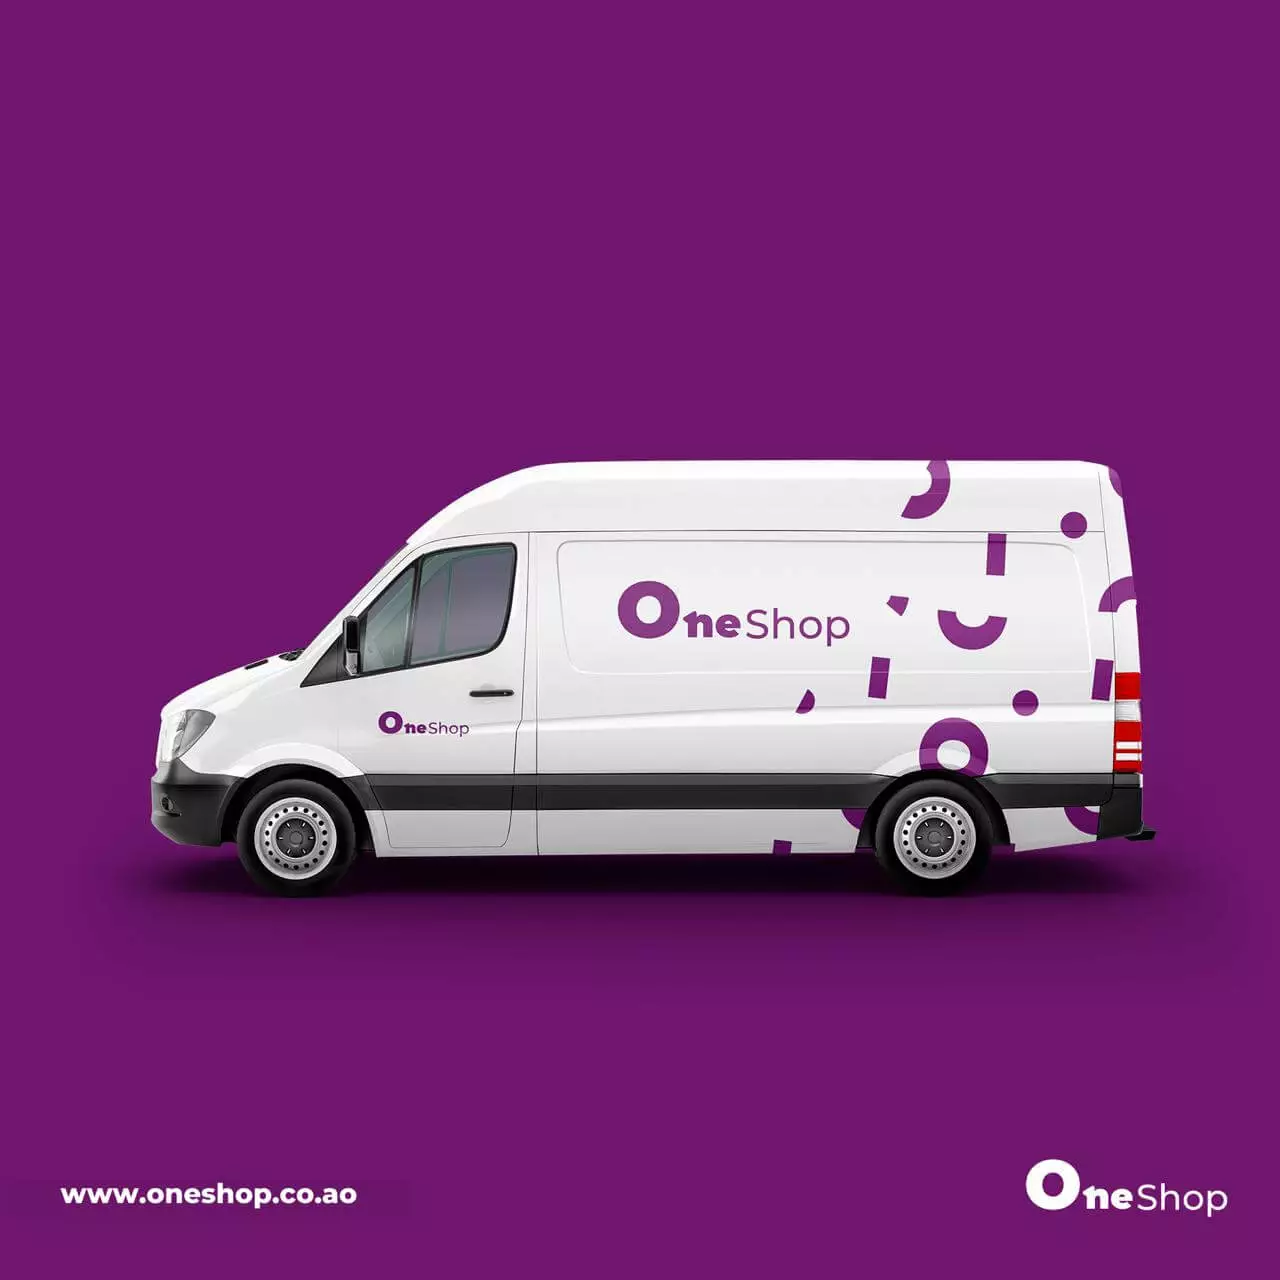 Carrinha de entregas da OneShop depois do Rebranding